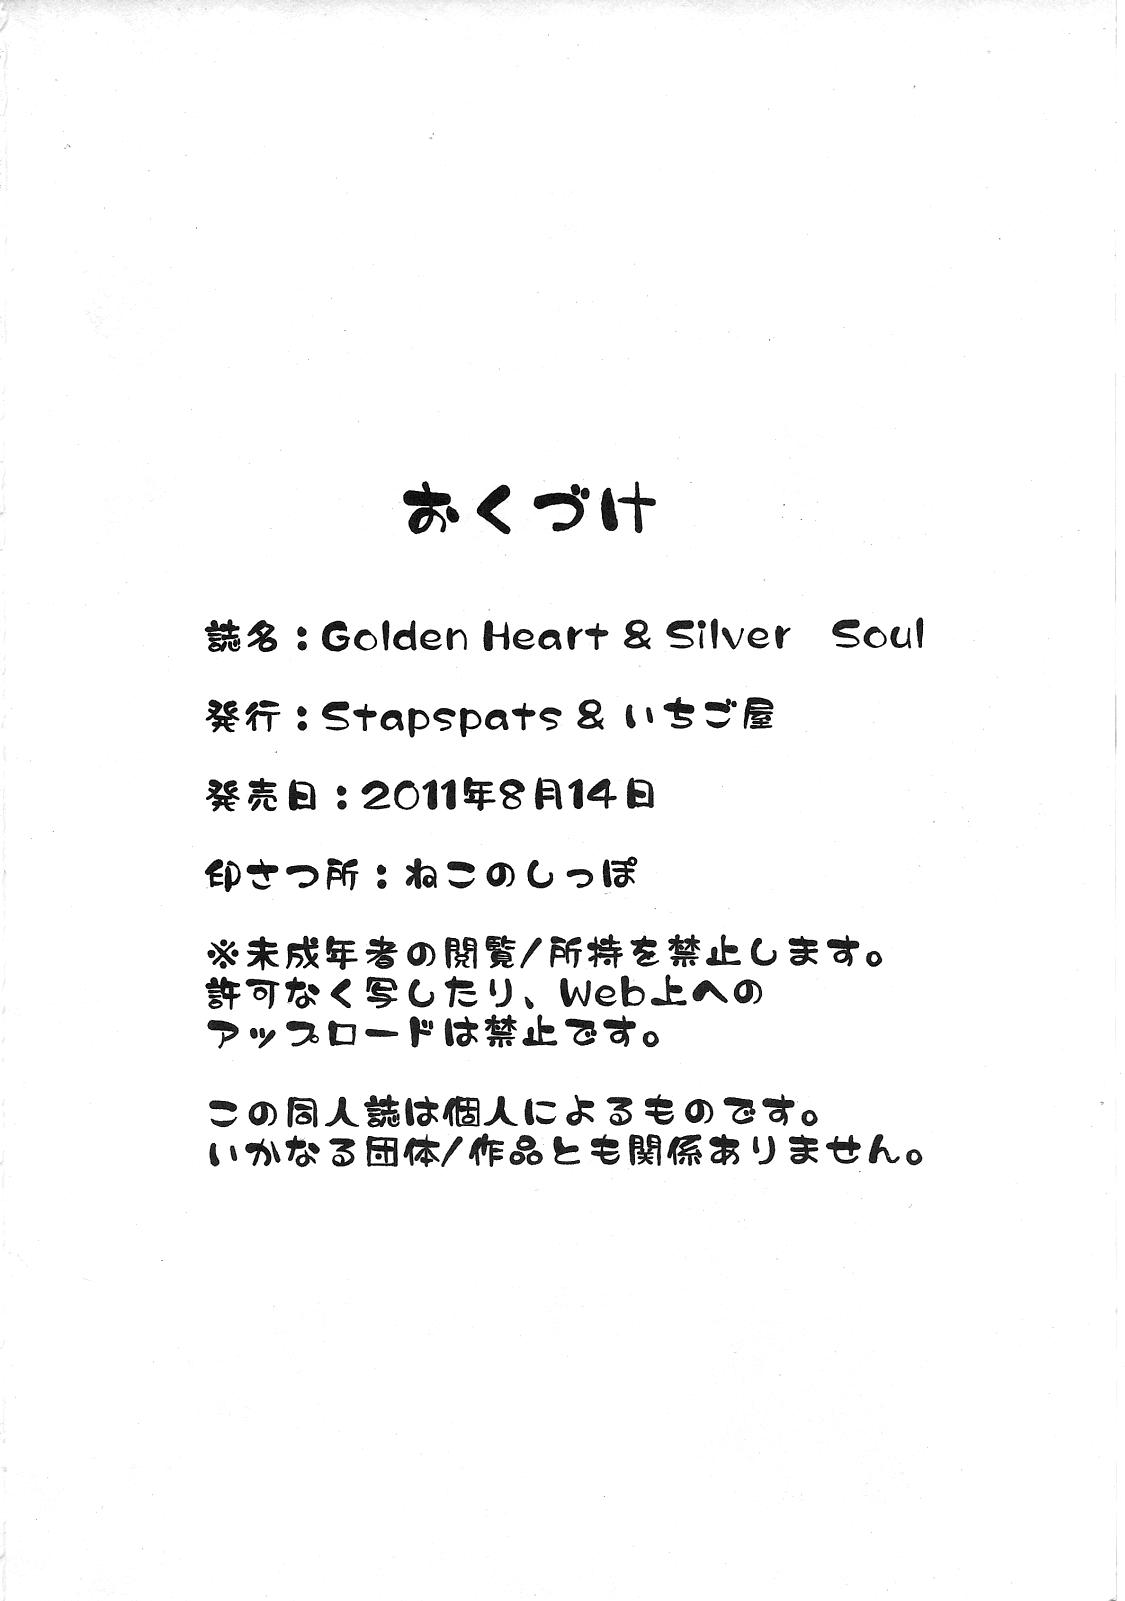 Golden Heart & Silver Soul 31